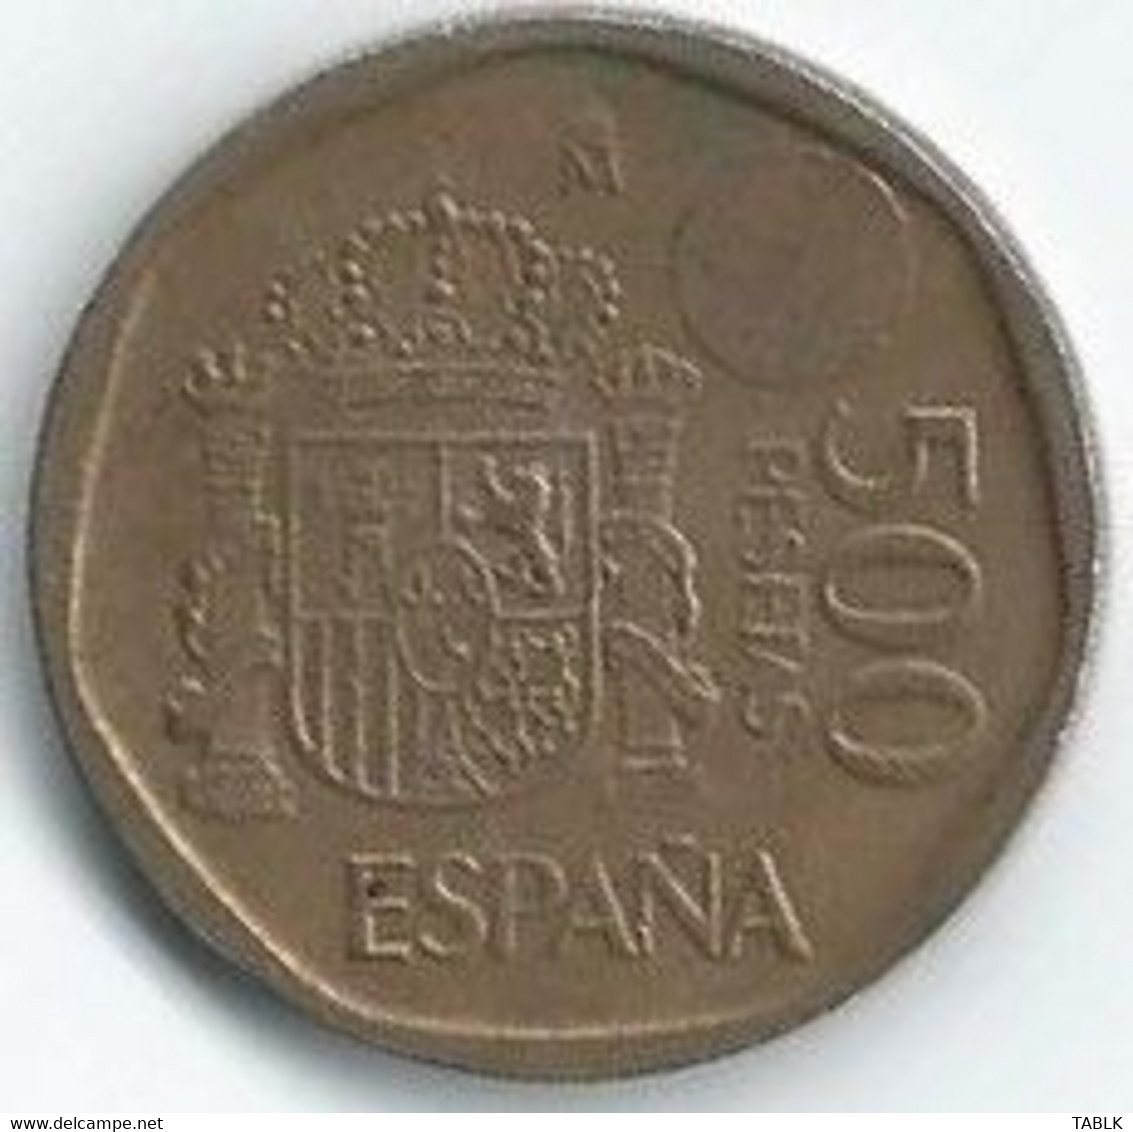 MM097 - SPANJE - SPAIN - 500 PESETA 1997 - 500 Pesetas